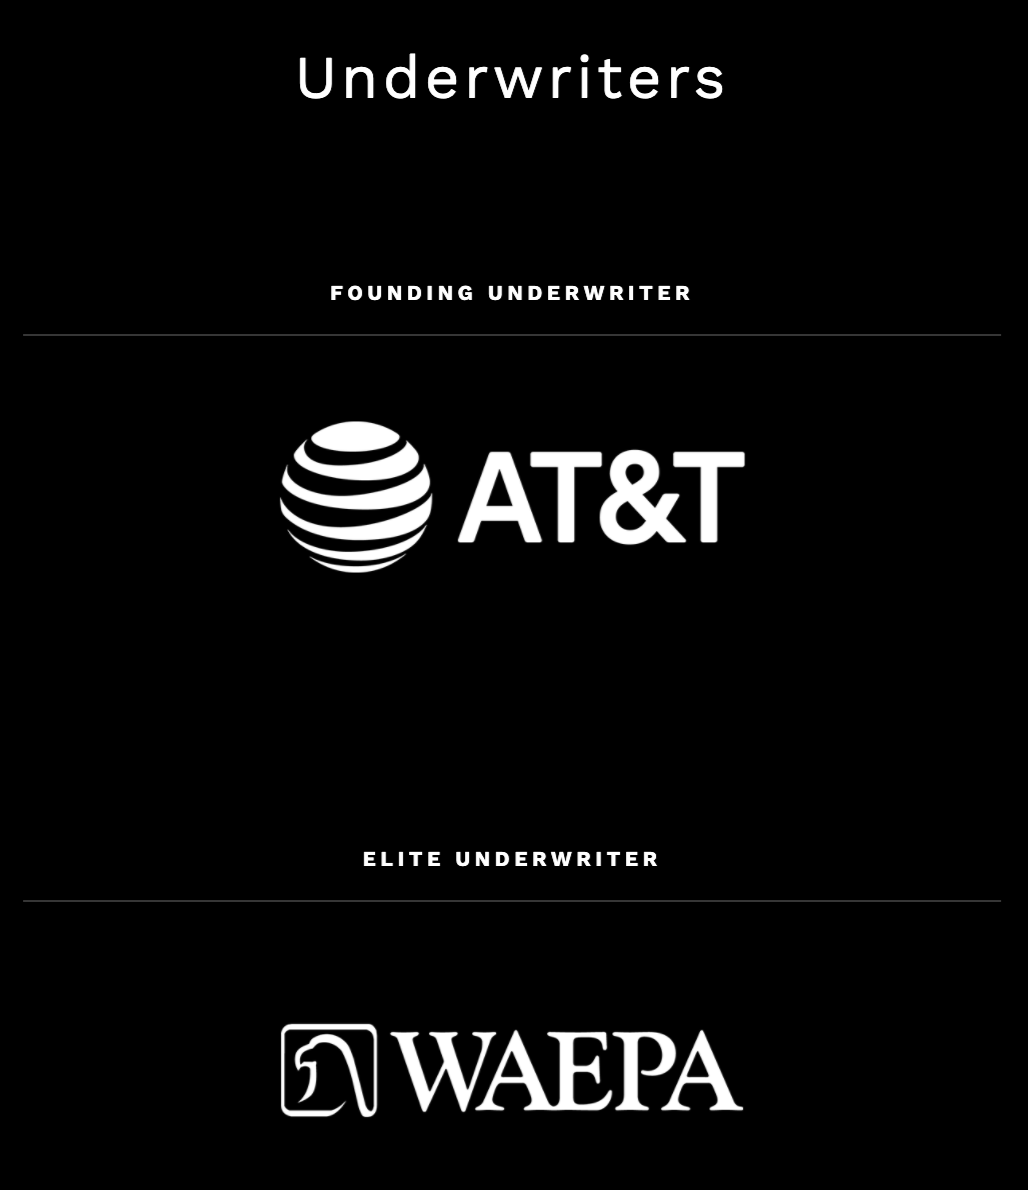 Founding Underwriter: AT&T, Elite Underwriter: WAEPA